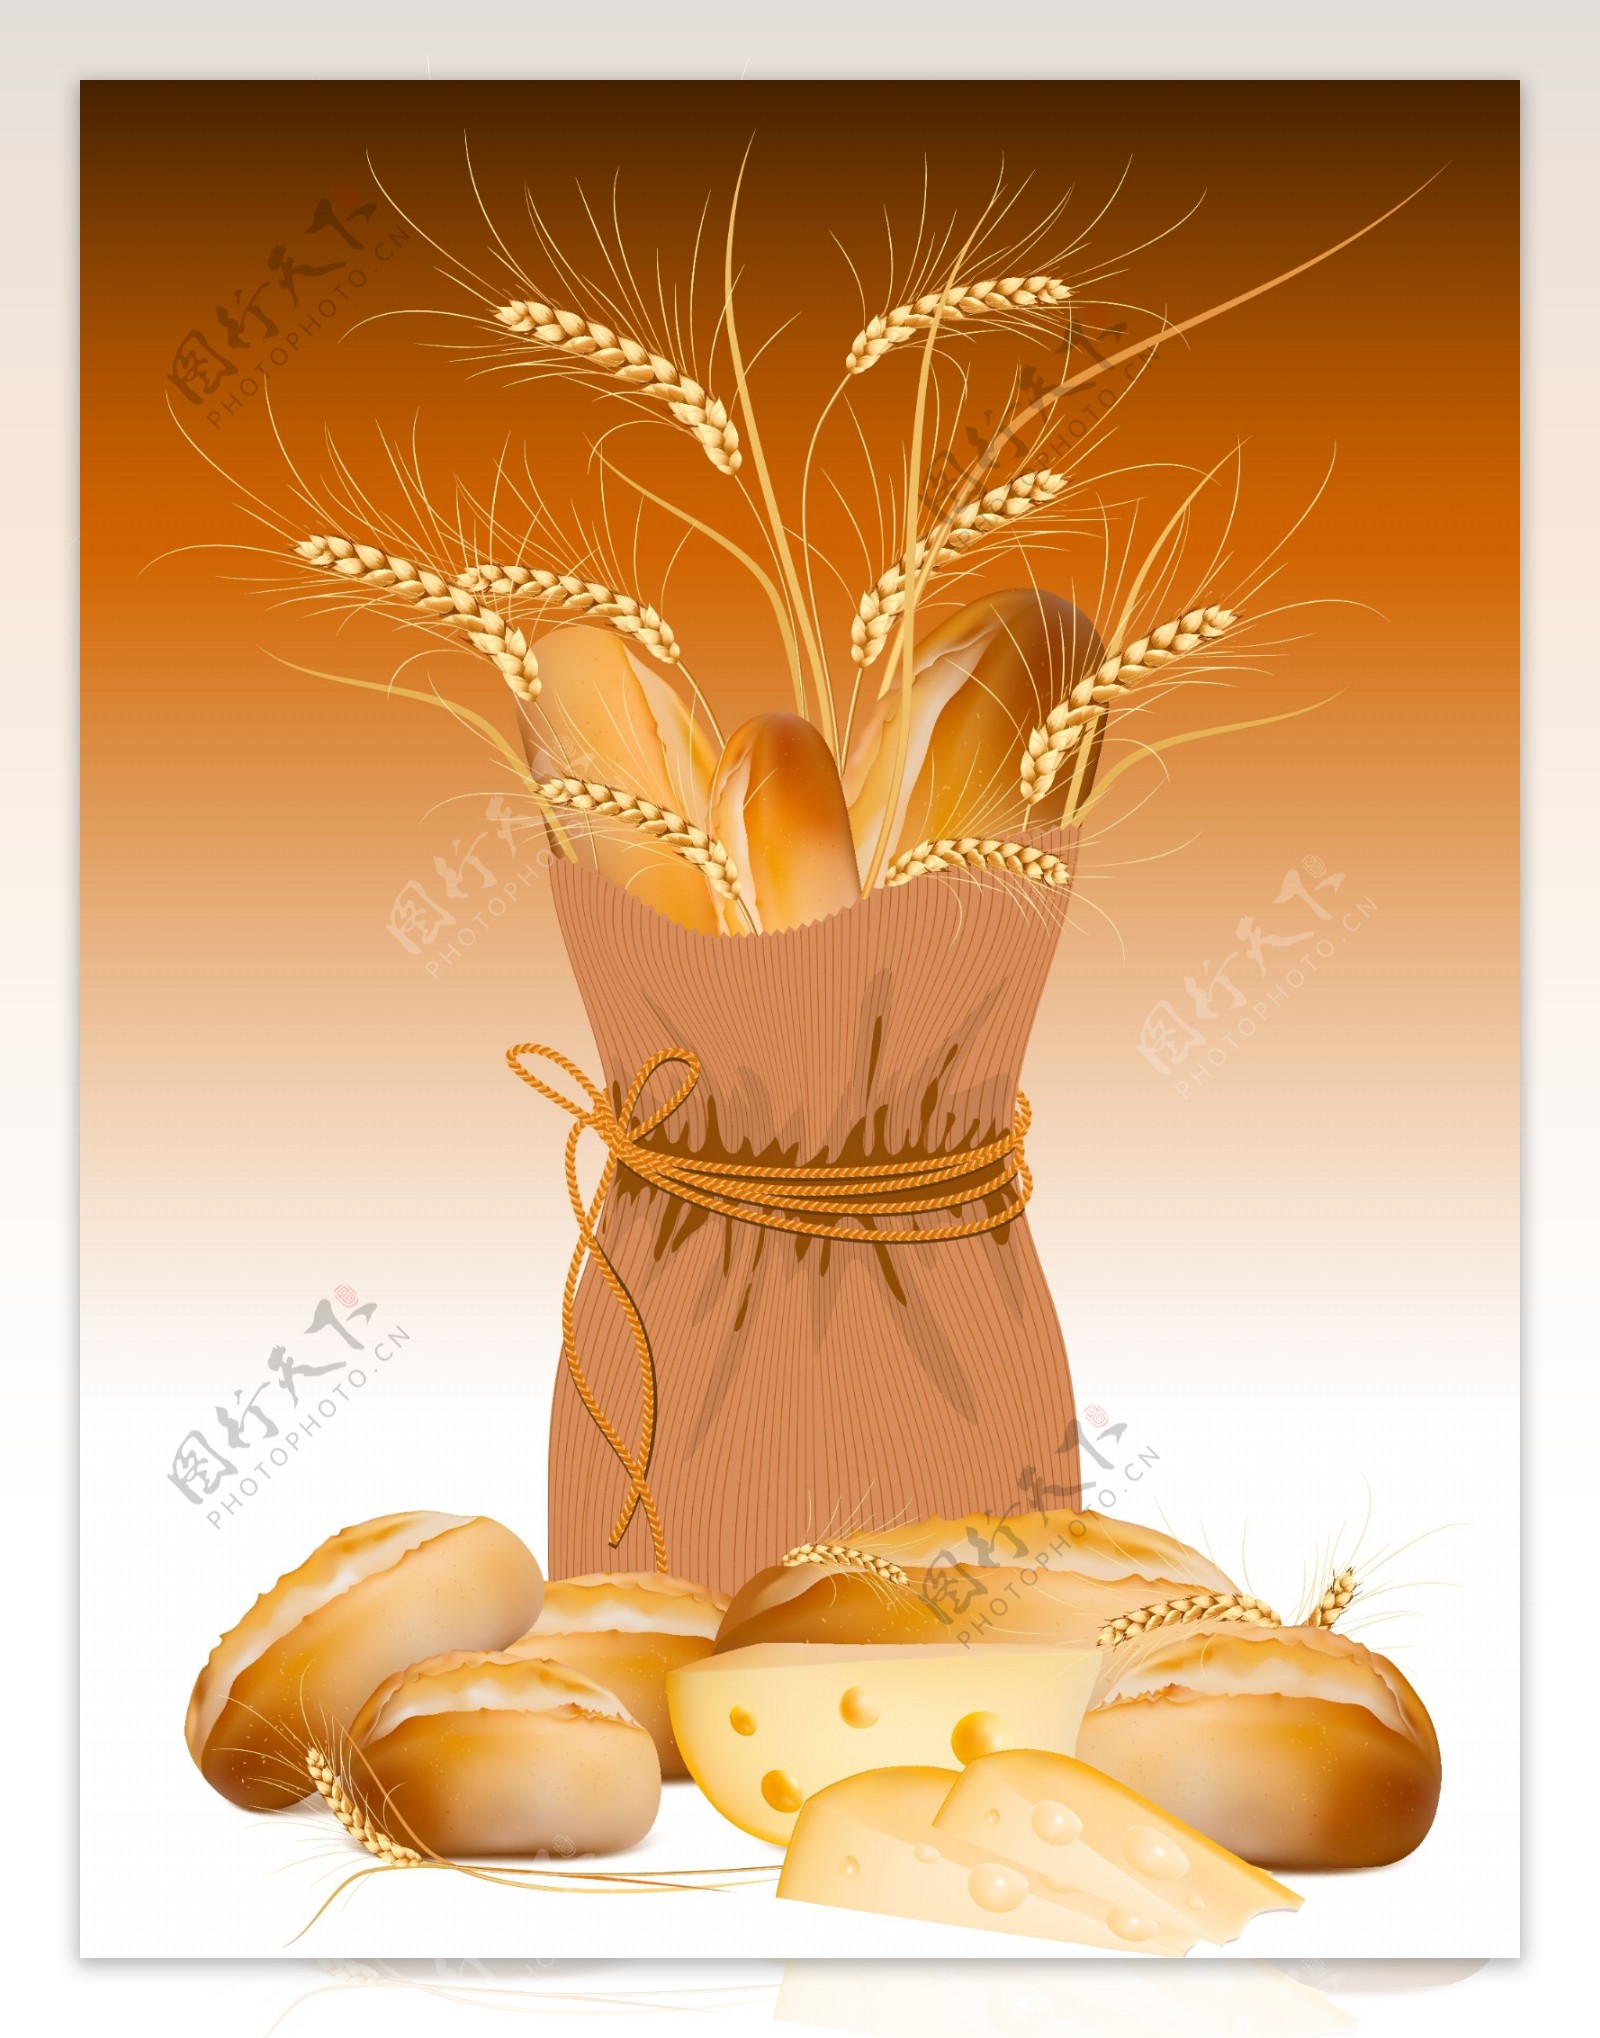 小麦与面包素材